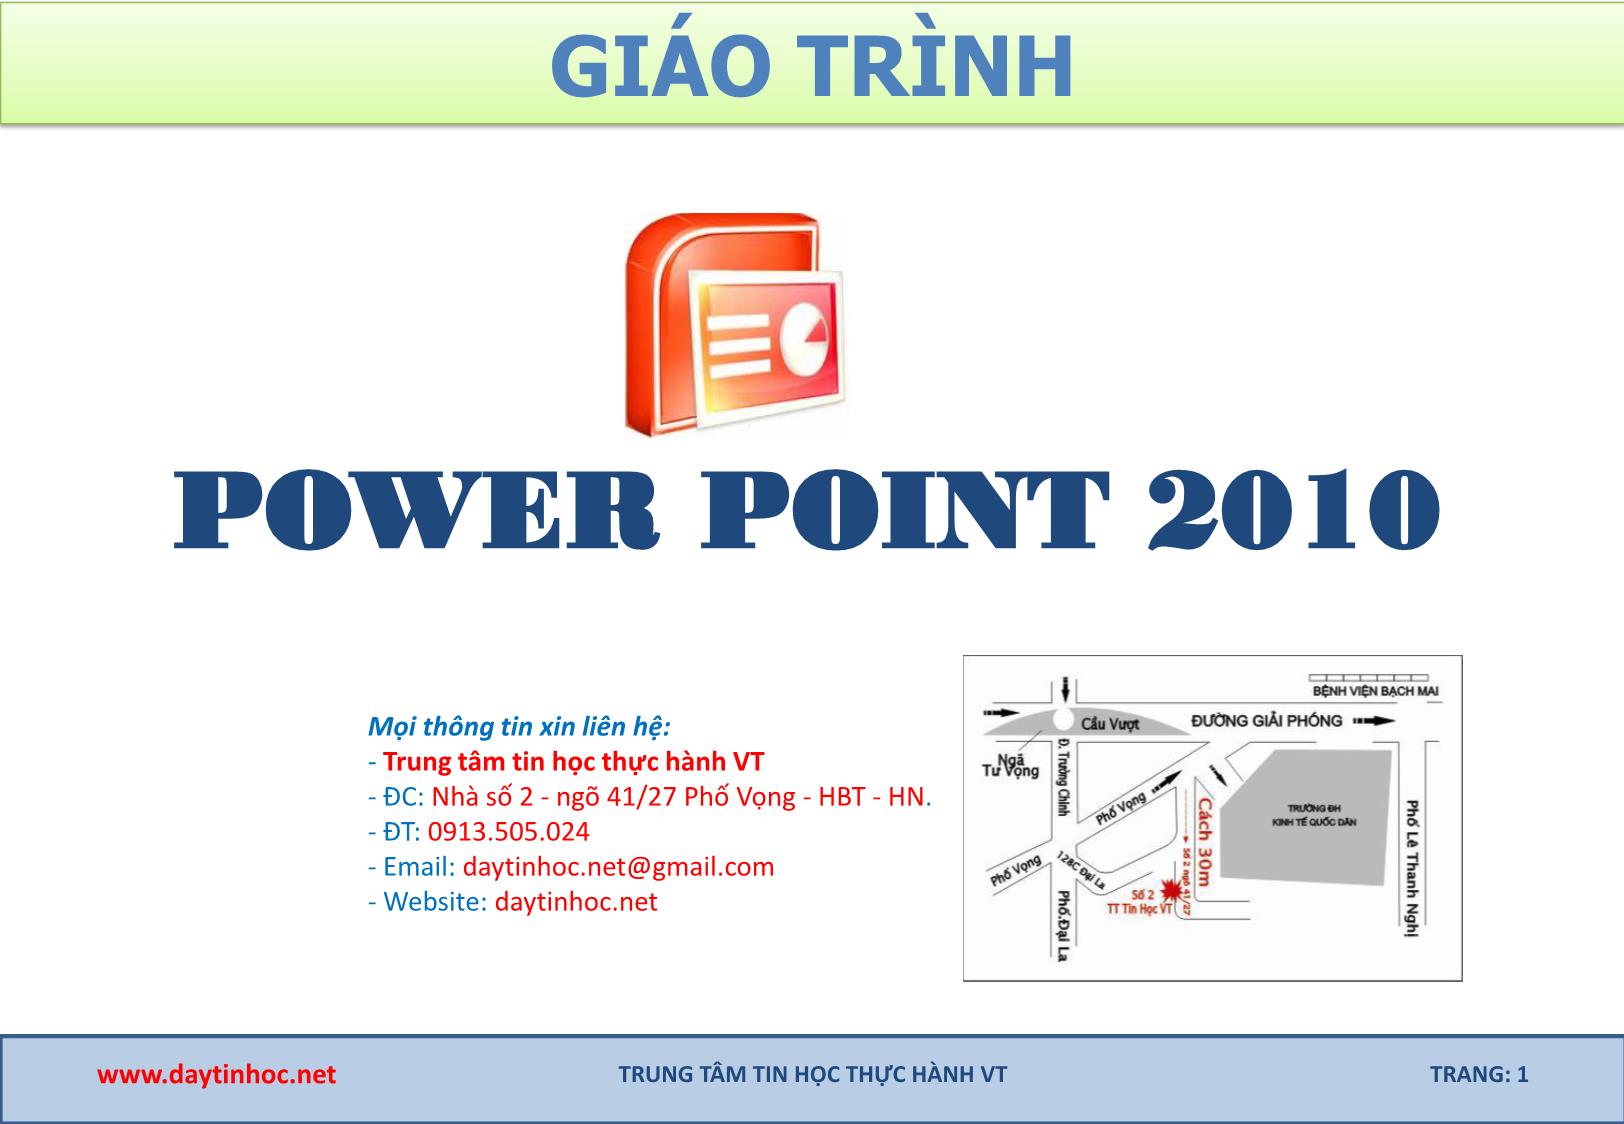 Giáo trình Power point 2010 trang 1